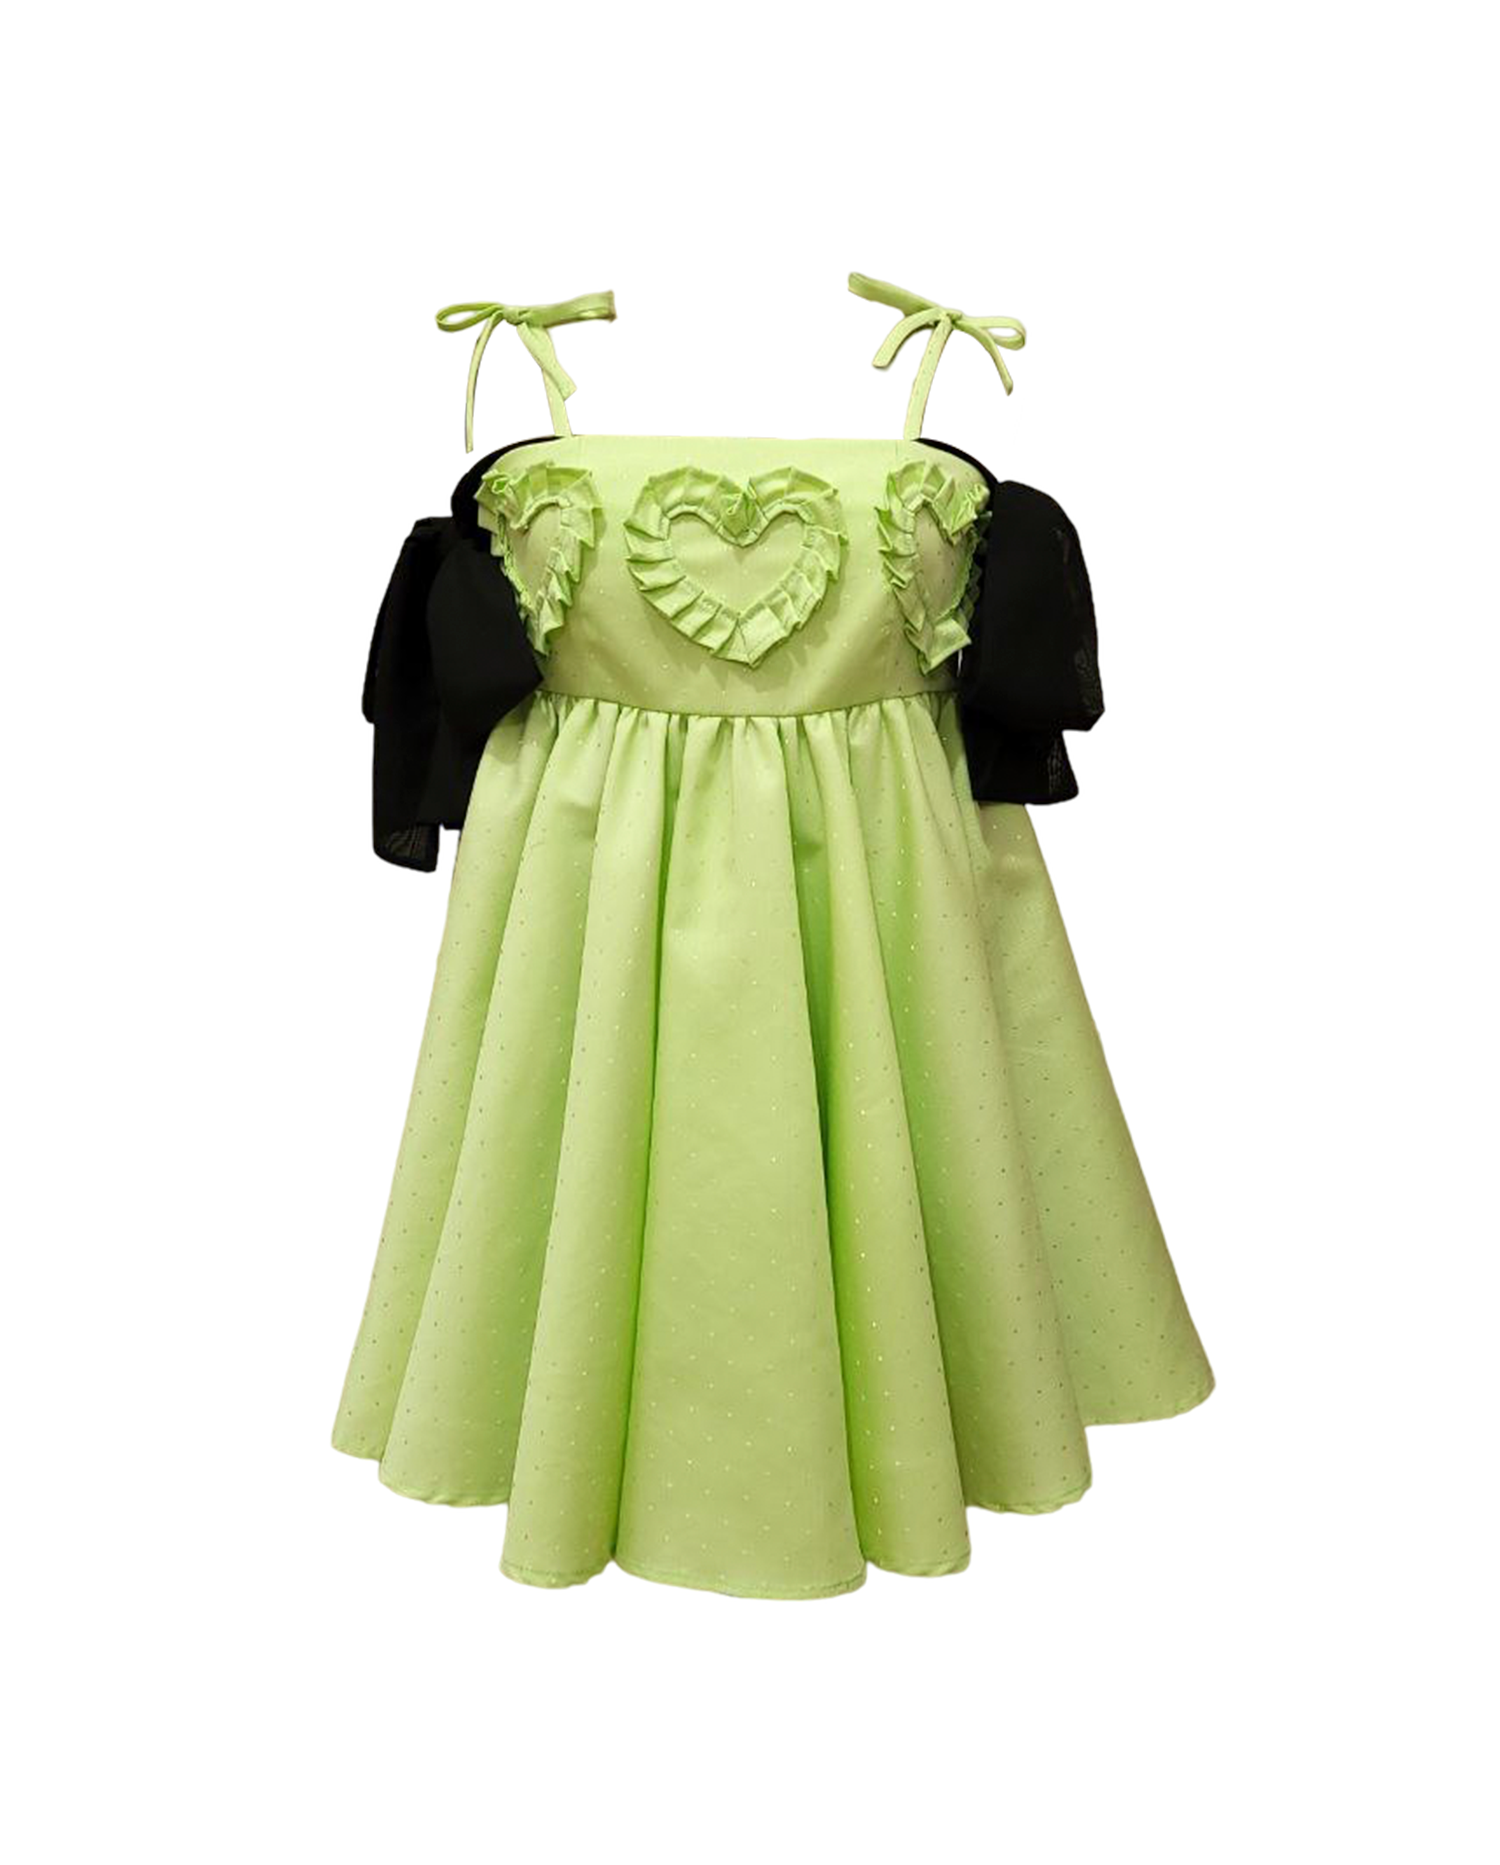 Dâ Emerald Heart Baby Green Dress